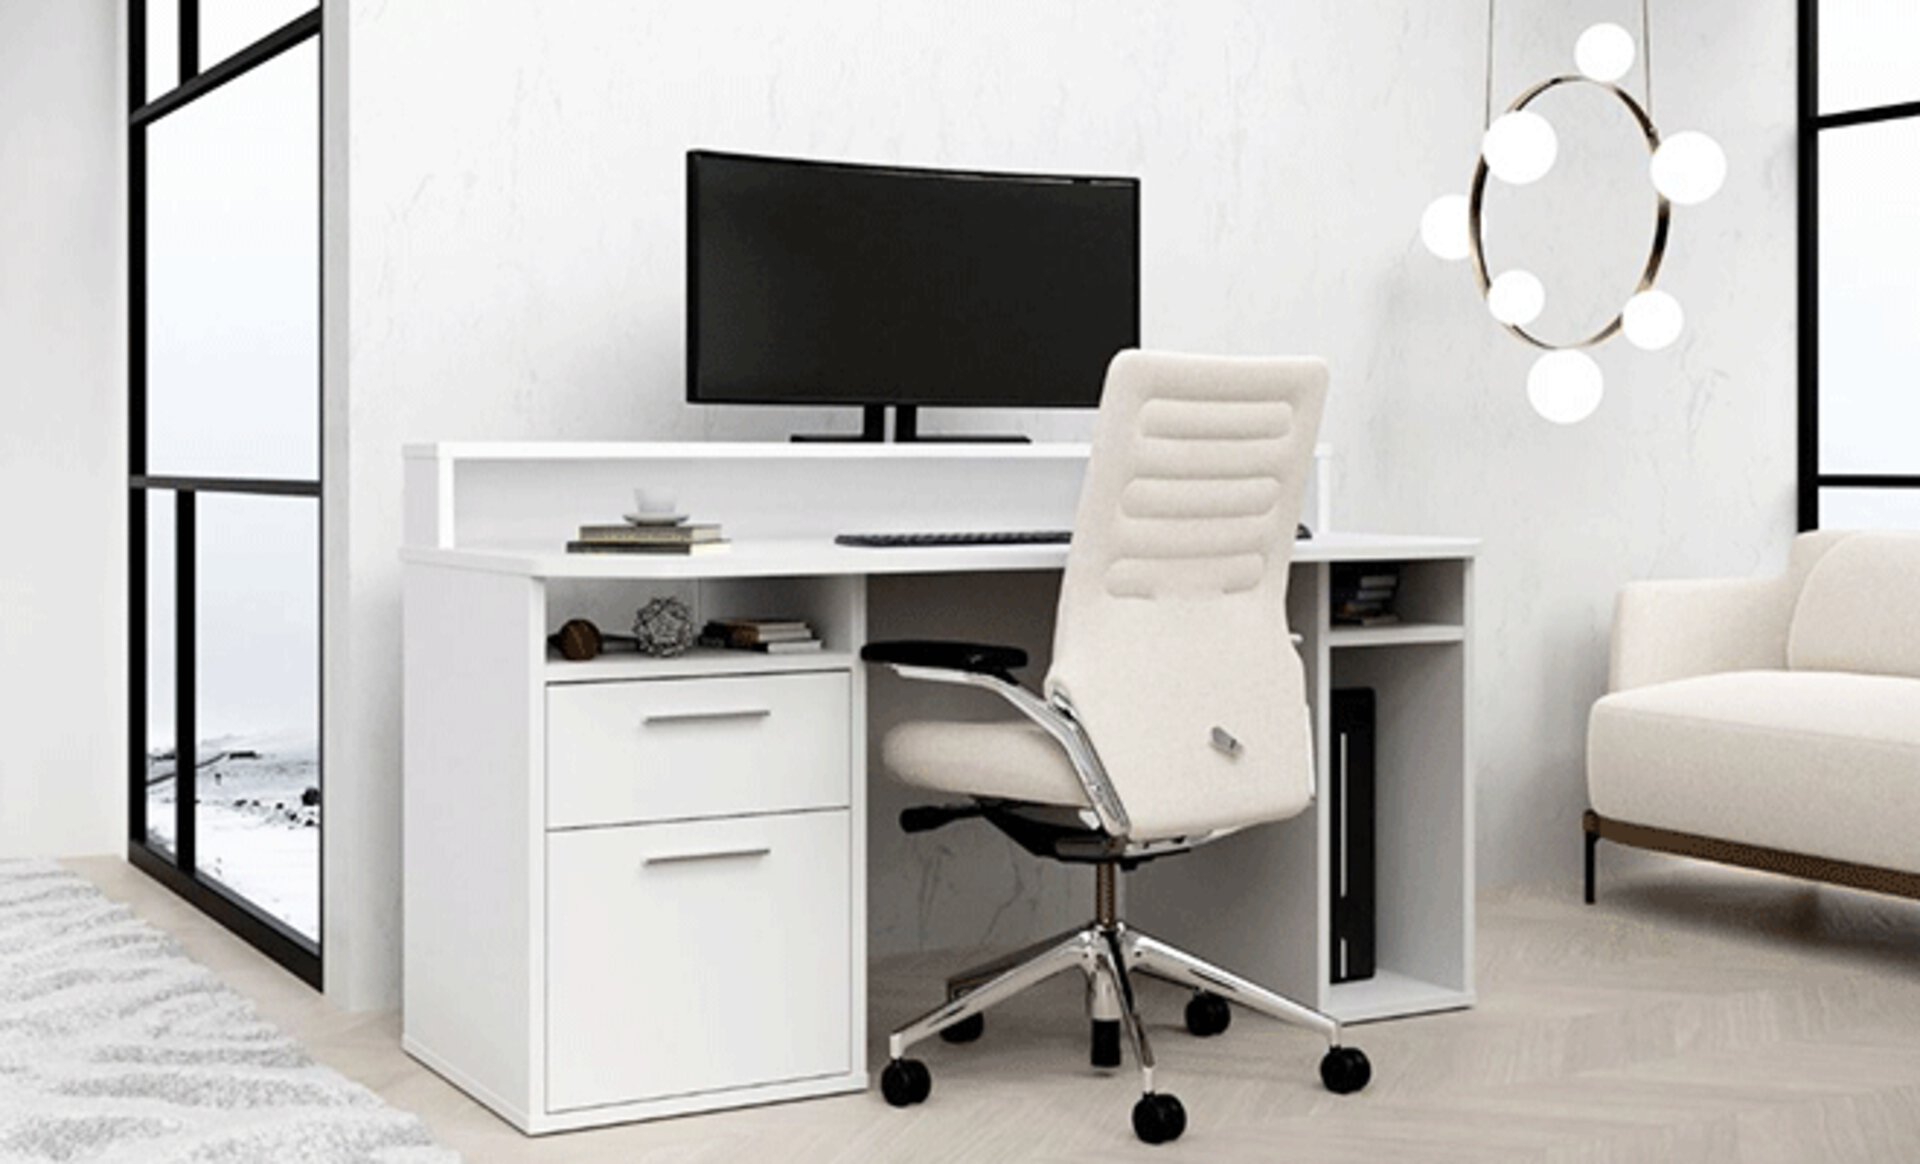 Inspirationsbild für WG-Zimmer zeicht kompakten Computer-Schreibtisch in weiß.